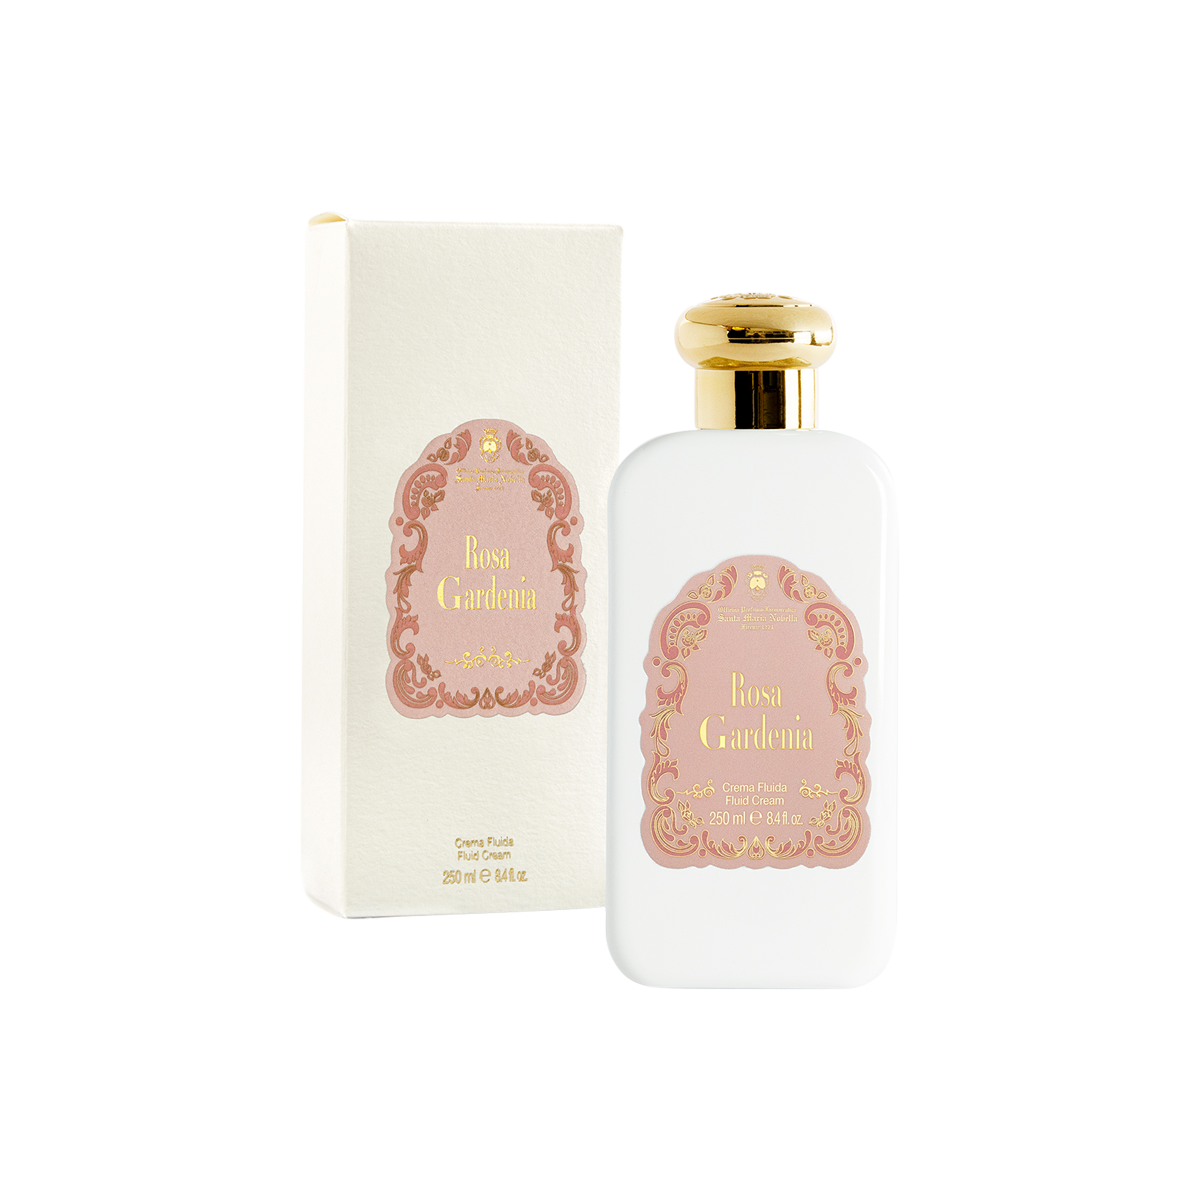 Santa Maria Novella - Rosa Gardenia Fluid Body Cream